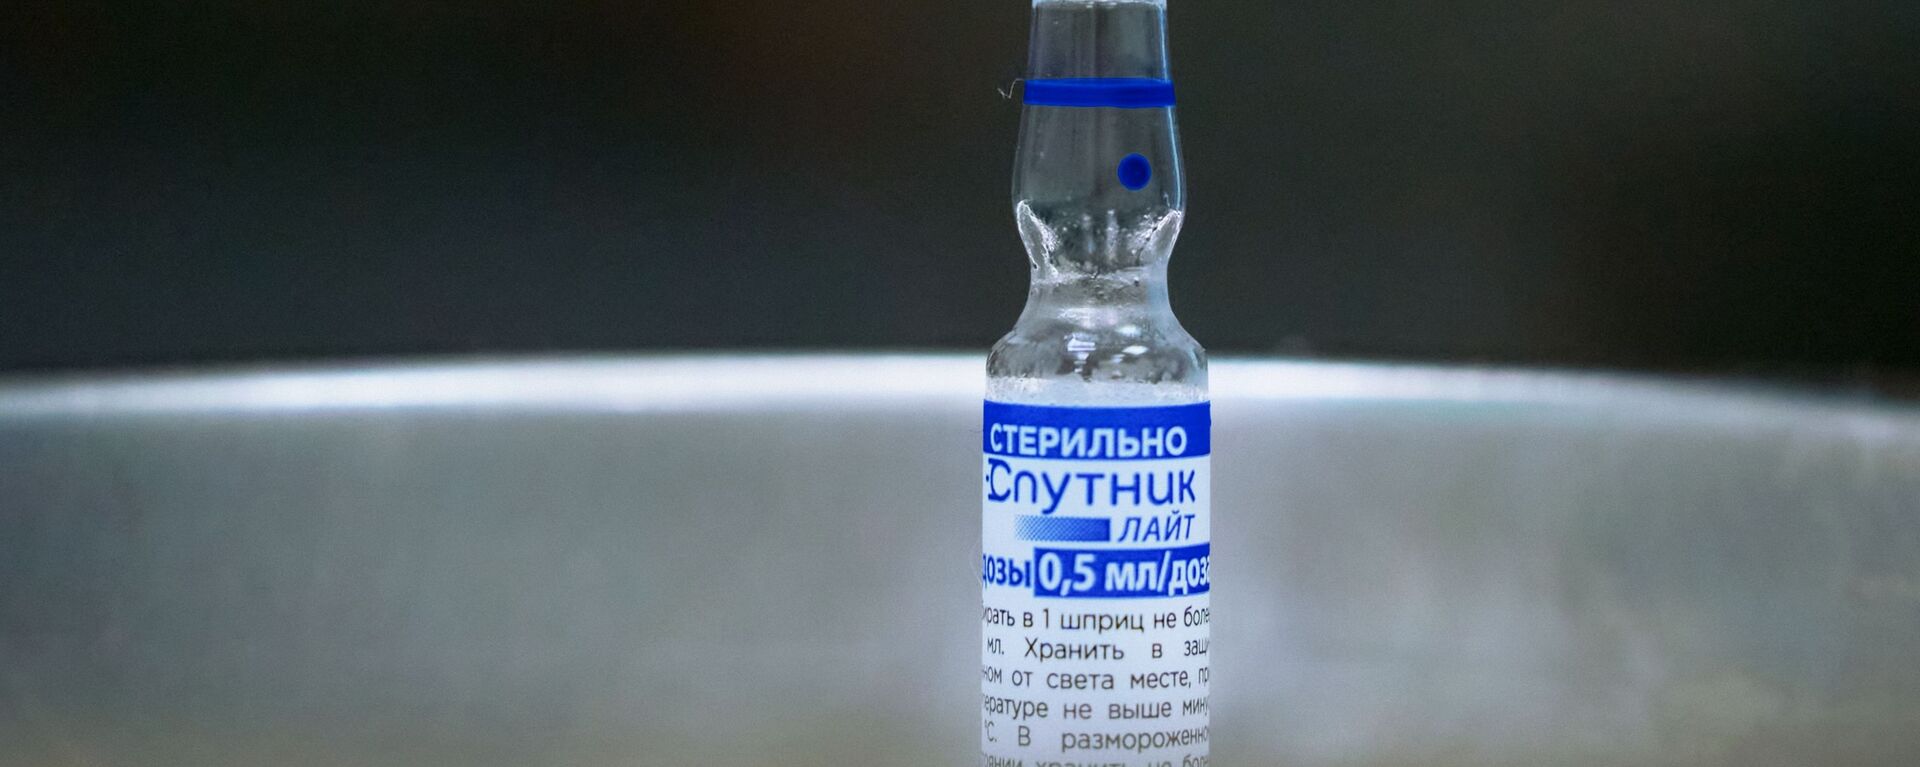 ロシア製の1回接種型の新型コロナウイルスワクチン「スプートニク・ライト」 - Sputnik 日本, 1920, 03.11.2021